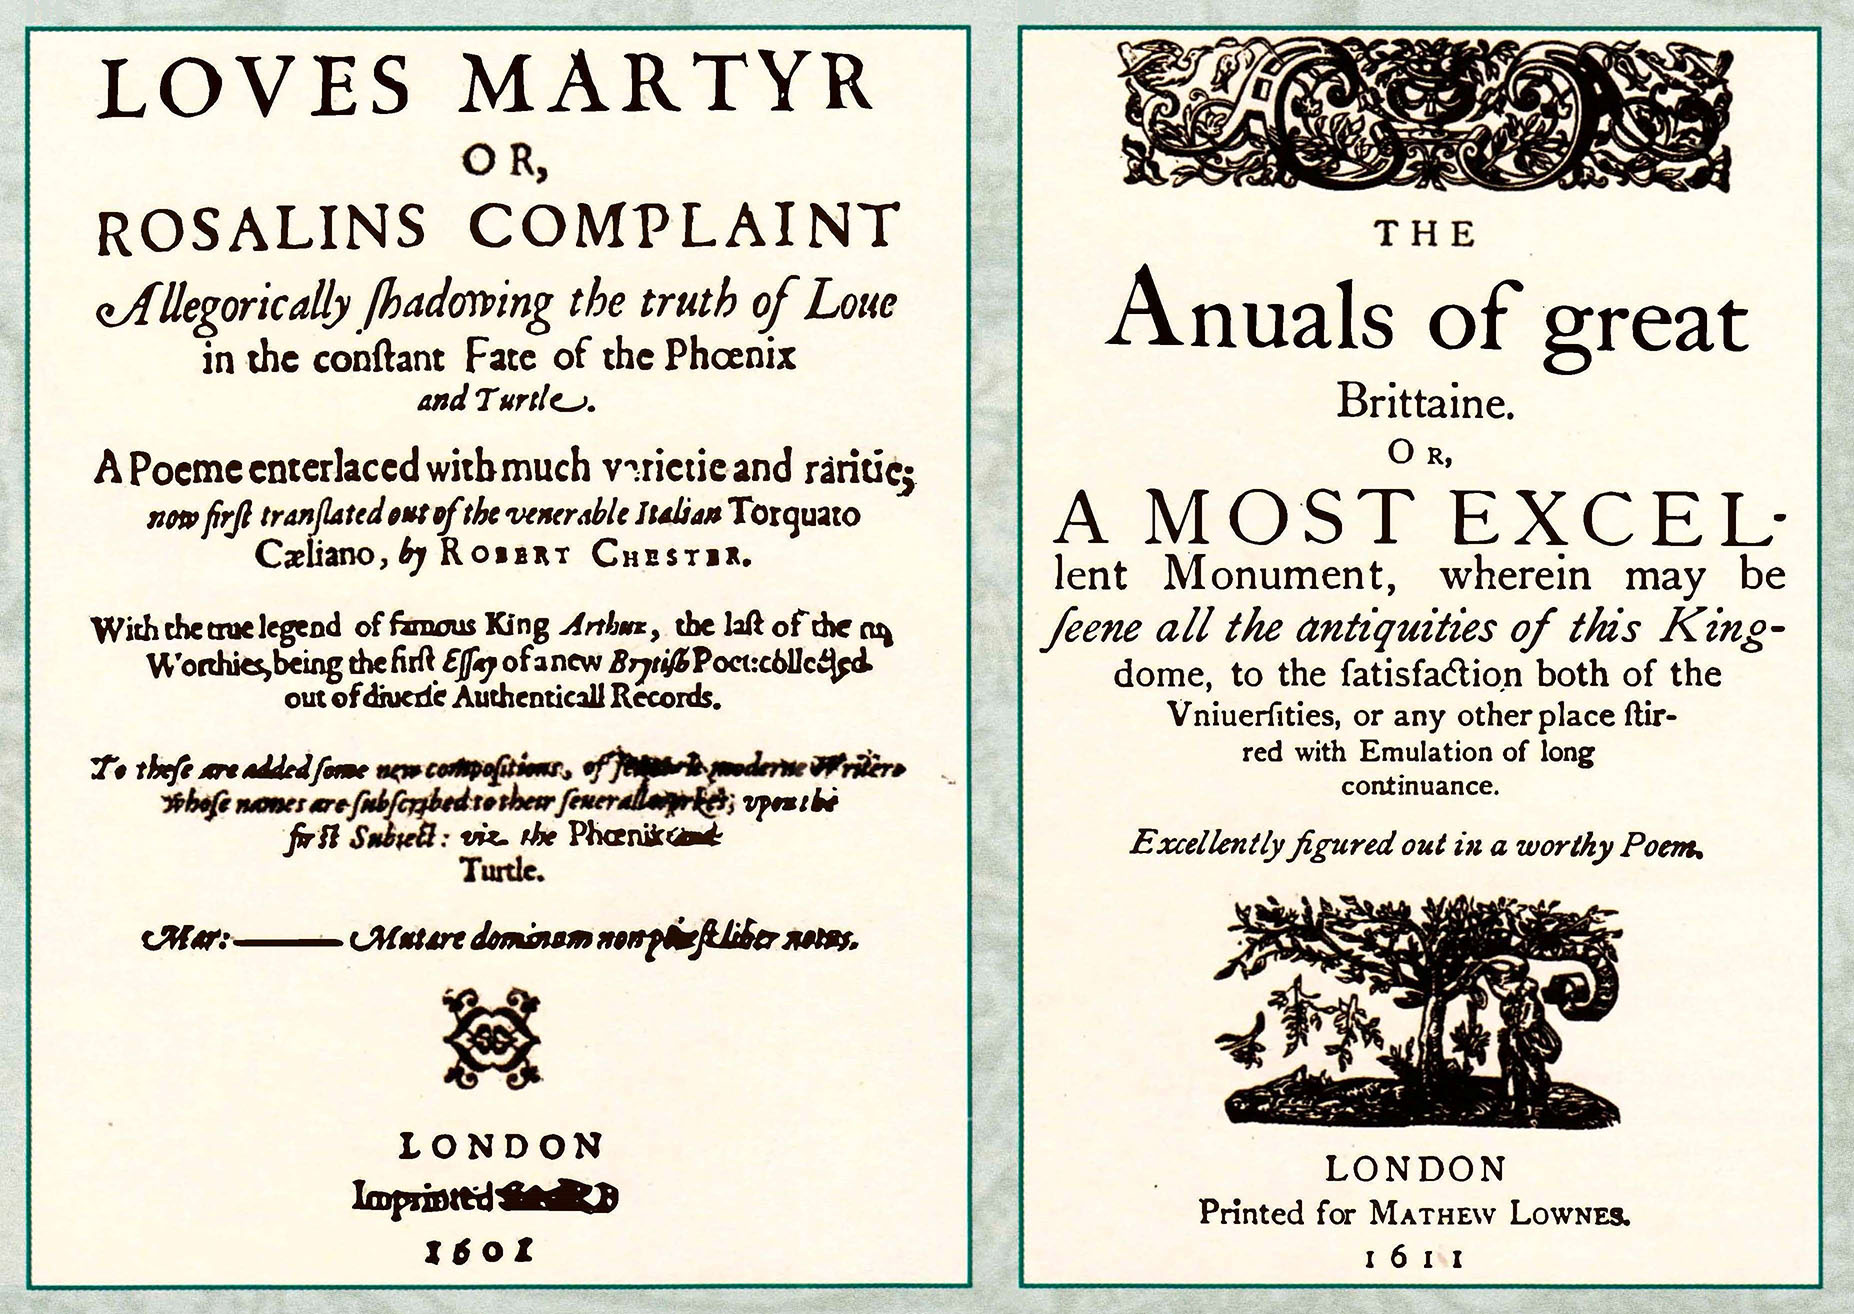 Титульный лист фолджеровского экземпляра "Жертва любви", датированного 1601 годом. Титульный лист лондонского экземпляра: другая дата (1611 г.), другой печатник.